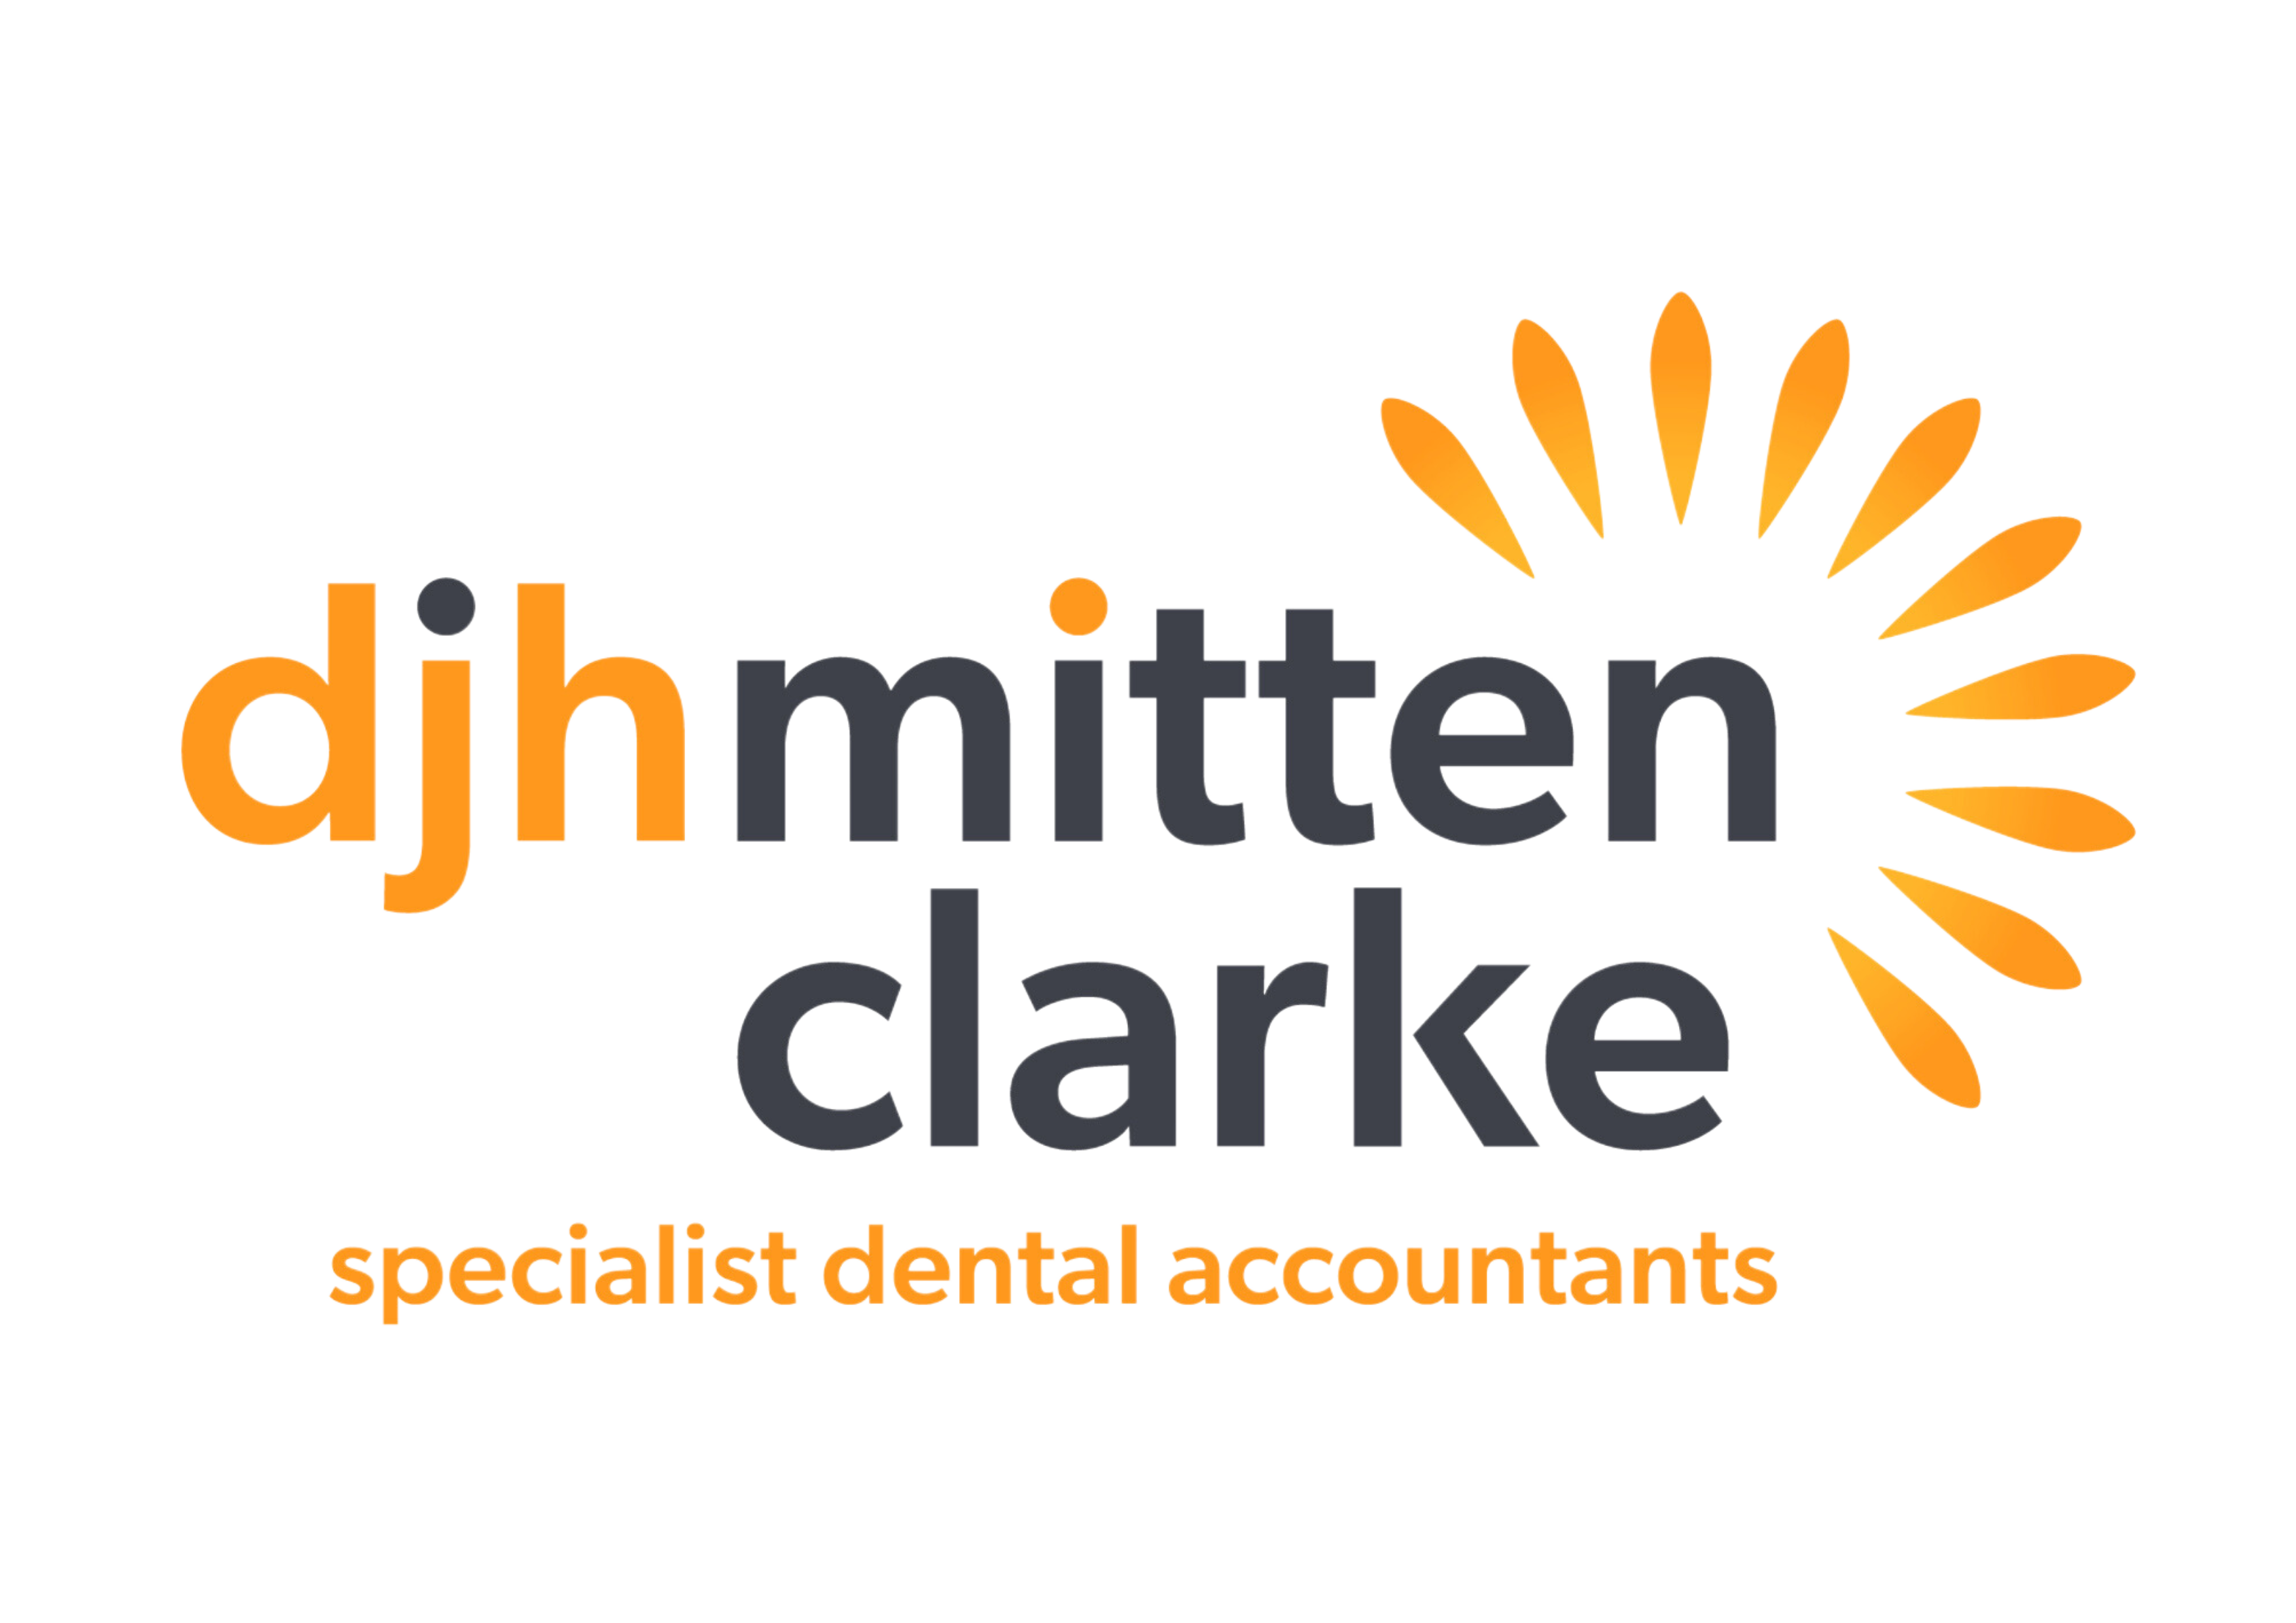 DJH Mitten Clarke, Specialist Dental Accountants